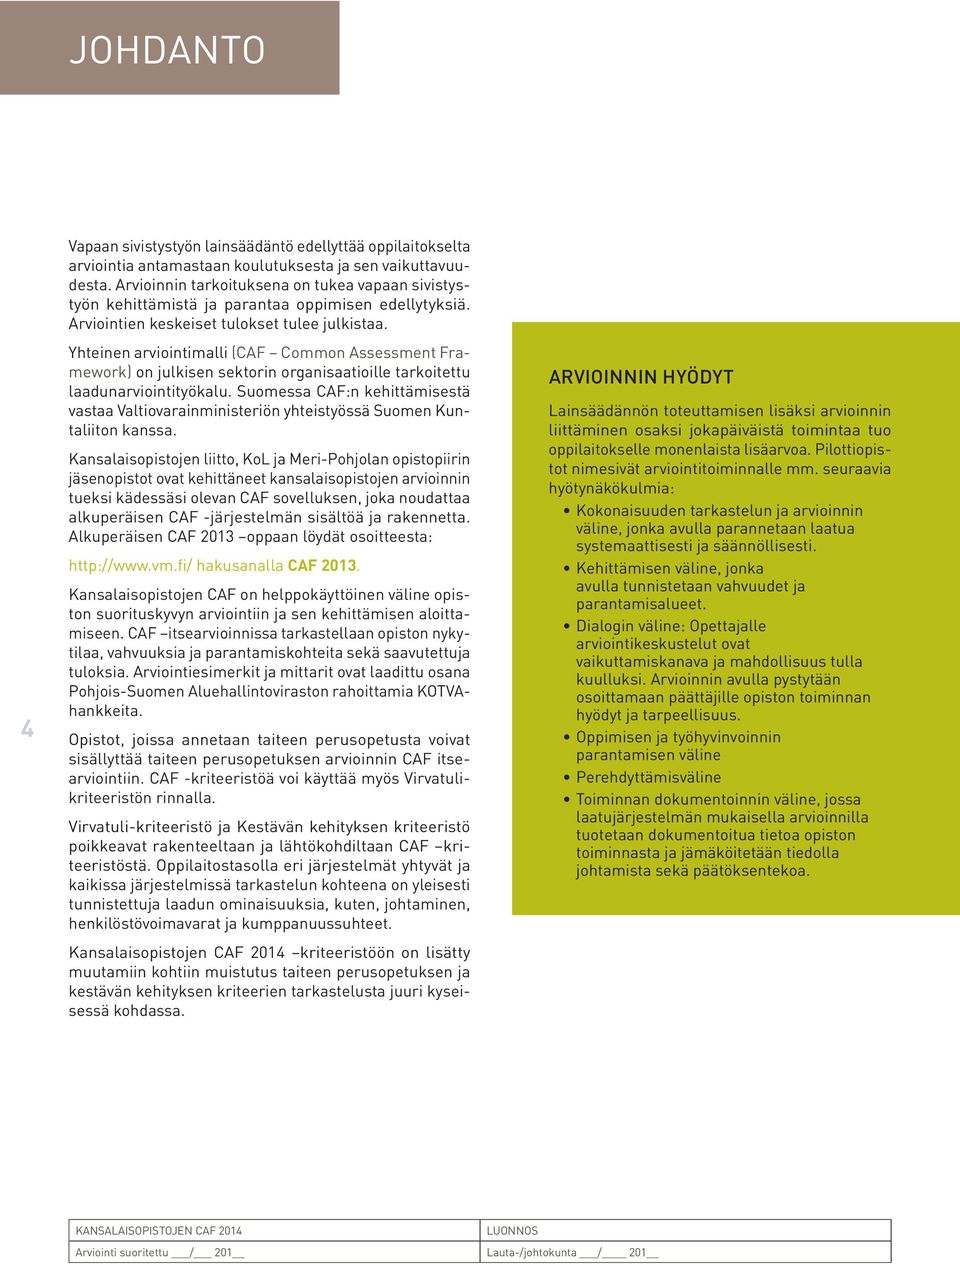 Yhteinen arviointimalli (CAF Common Assessment Framework) on julkisen sektorin organisaatioille tarkoitettu laadunarviointityökalu.